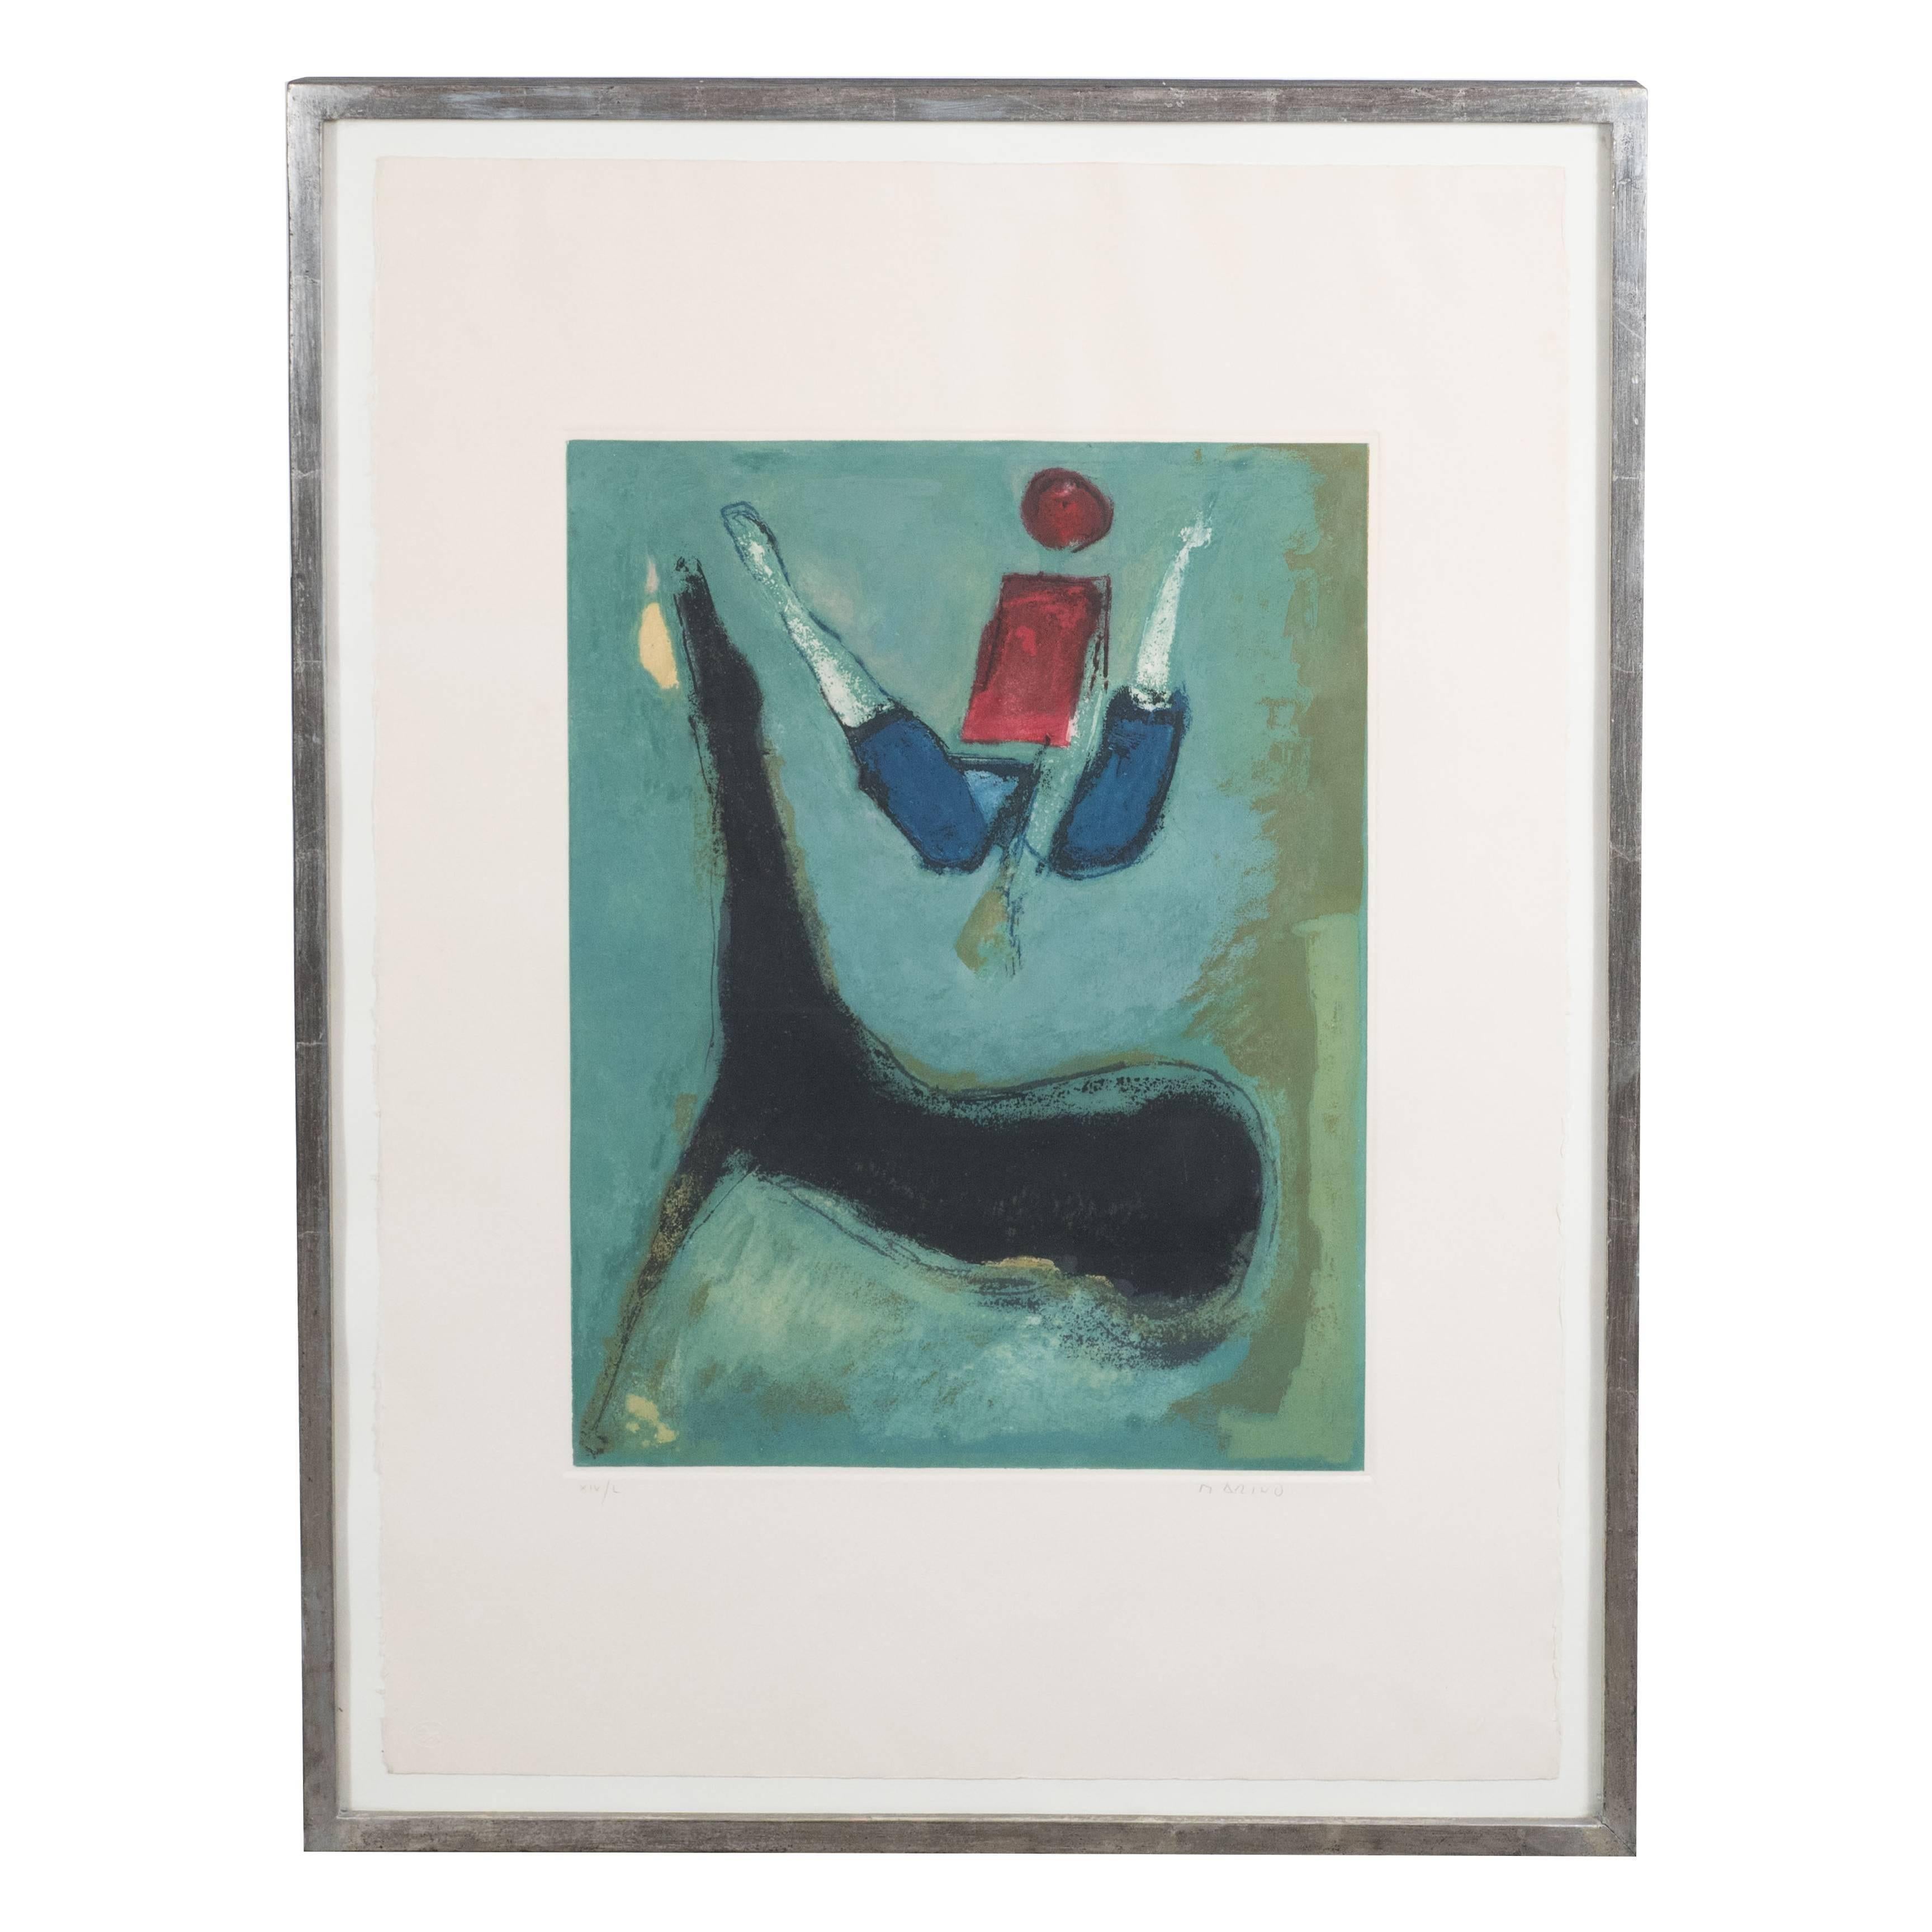 Cette lithographie en couleurs, vibrante et emblématique, a été réalisée par le célèbre artiste italien Marino Marini, vers 1970. Contemporain de Jean Arp, Alexander Calder et Henry Moore, Marini est surtout connu pour ses œuvres figuratives à thème